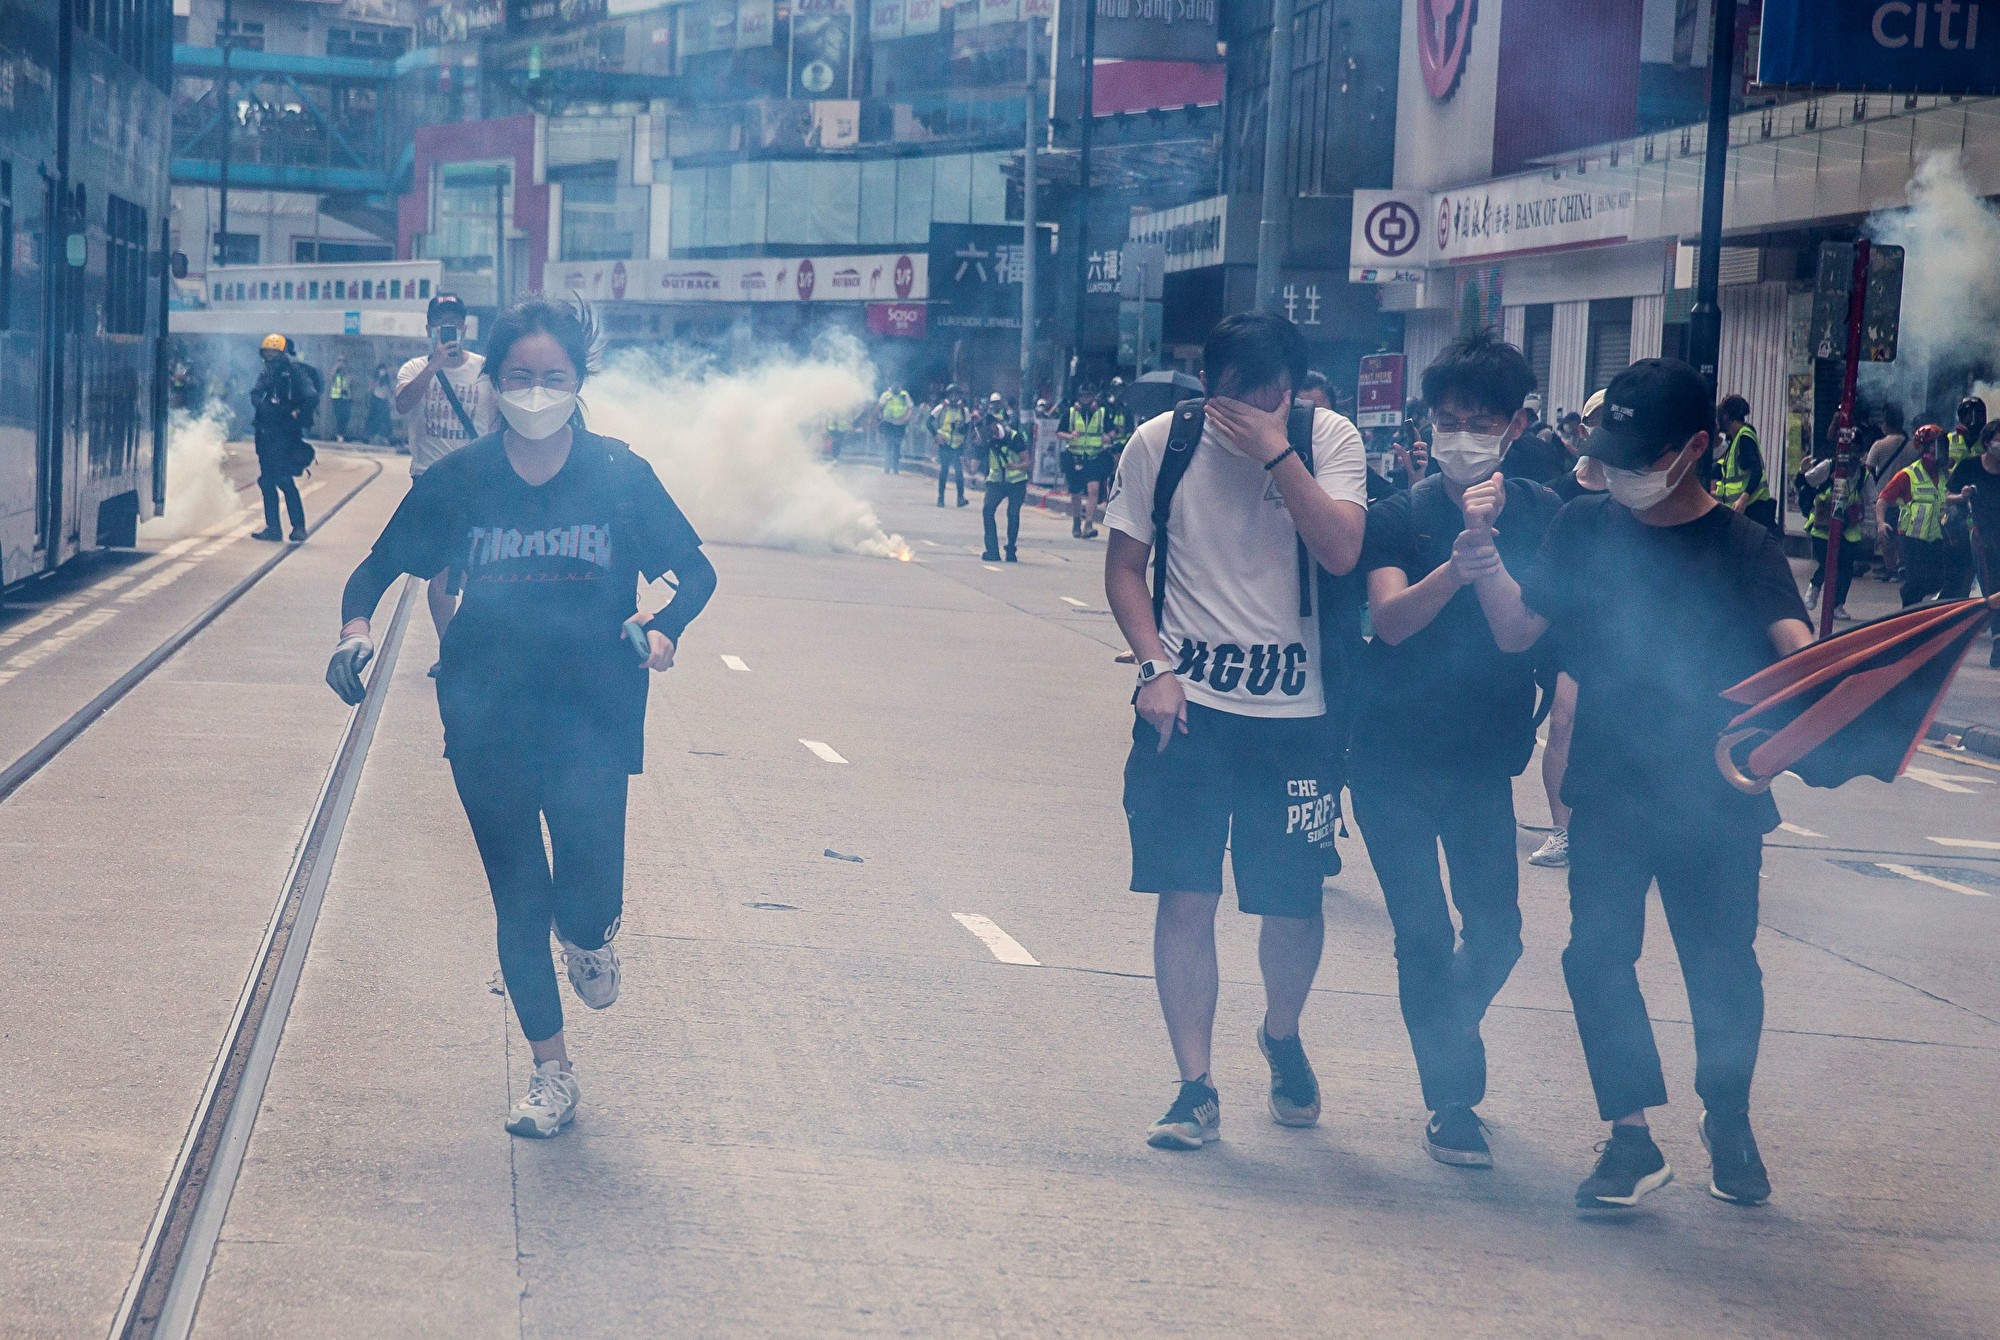 更新 反国安法游行逾百人被捕1女危殆 香港 港人 港版国安法 大纪元